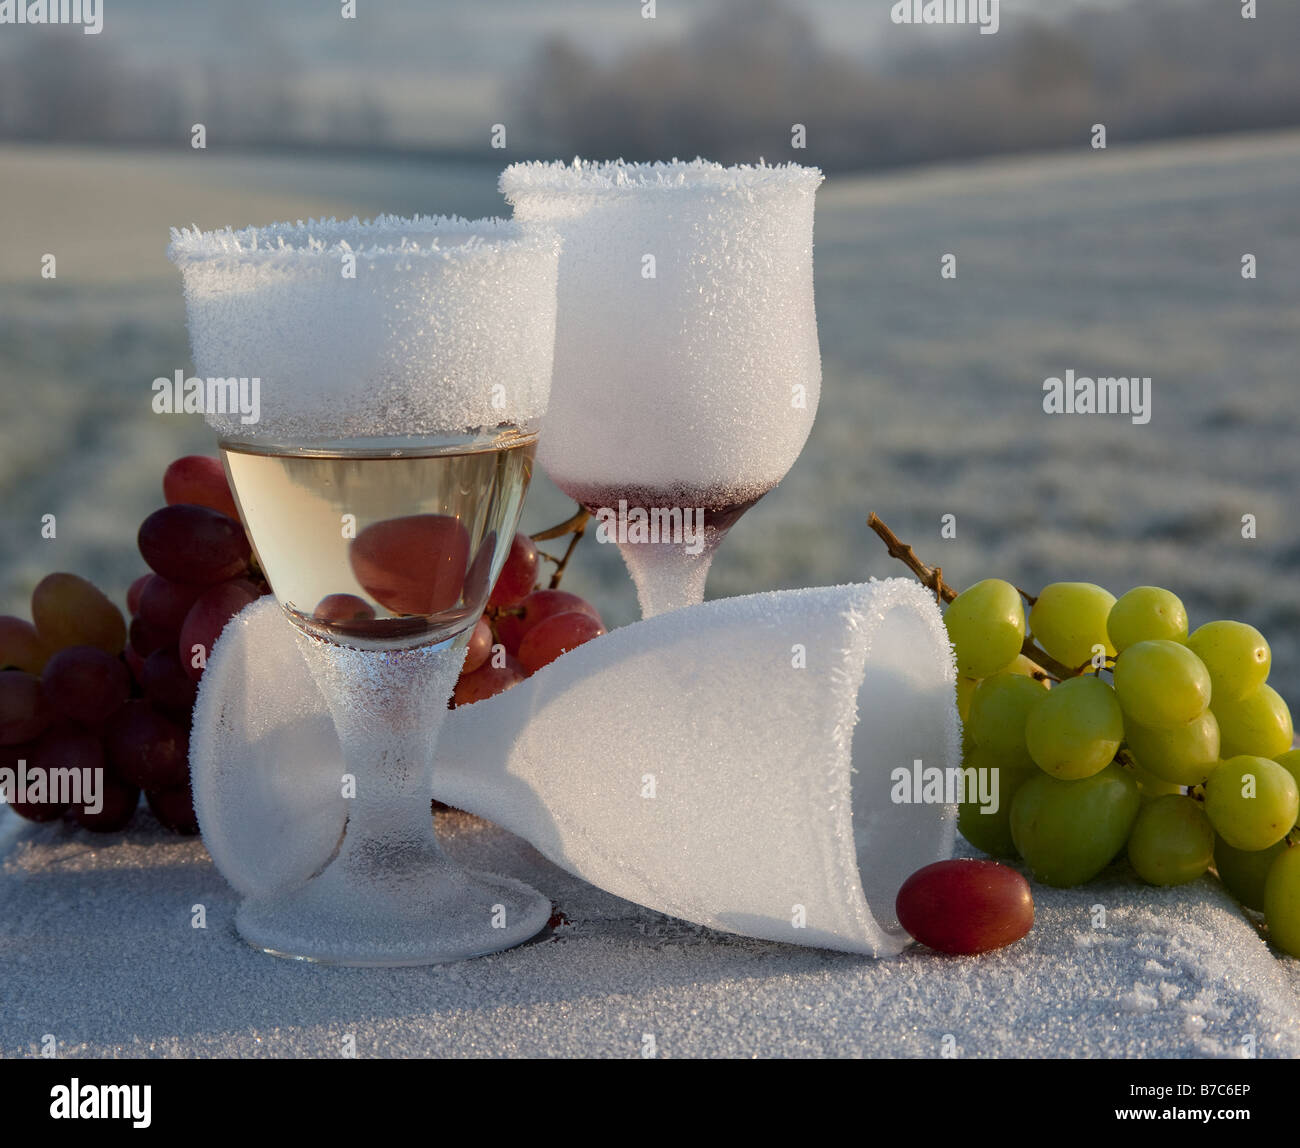 Mattina-dopo-notte-prima smerigliati e rotto il vetro di vino partito rimane in campagna congelati REGNO UNITO Foto Stock